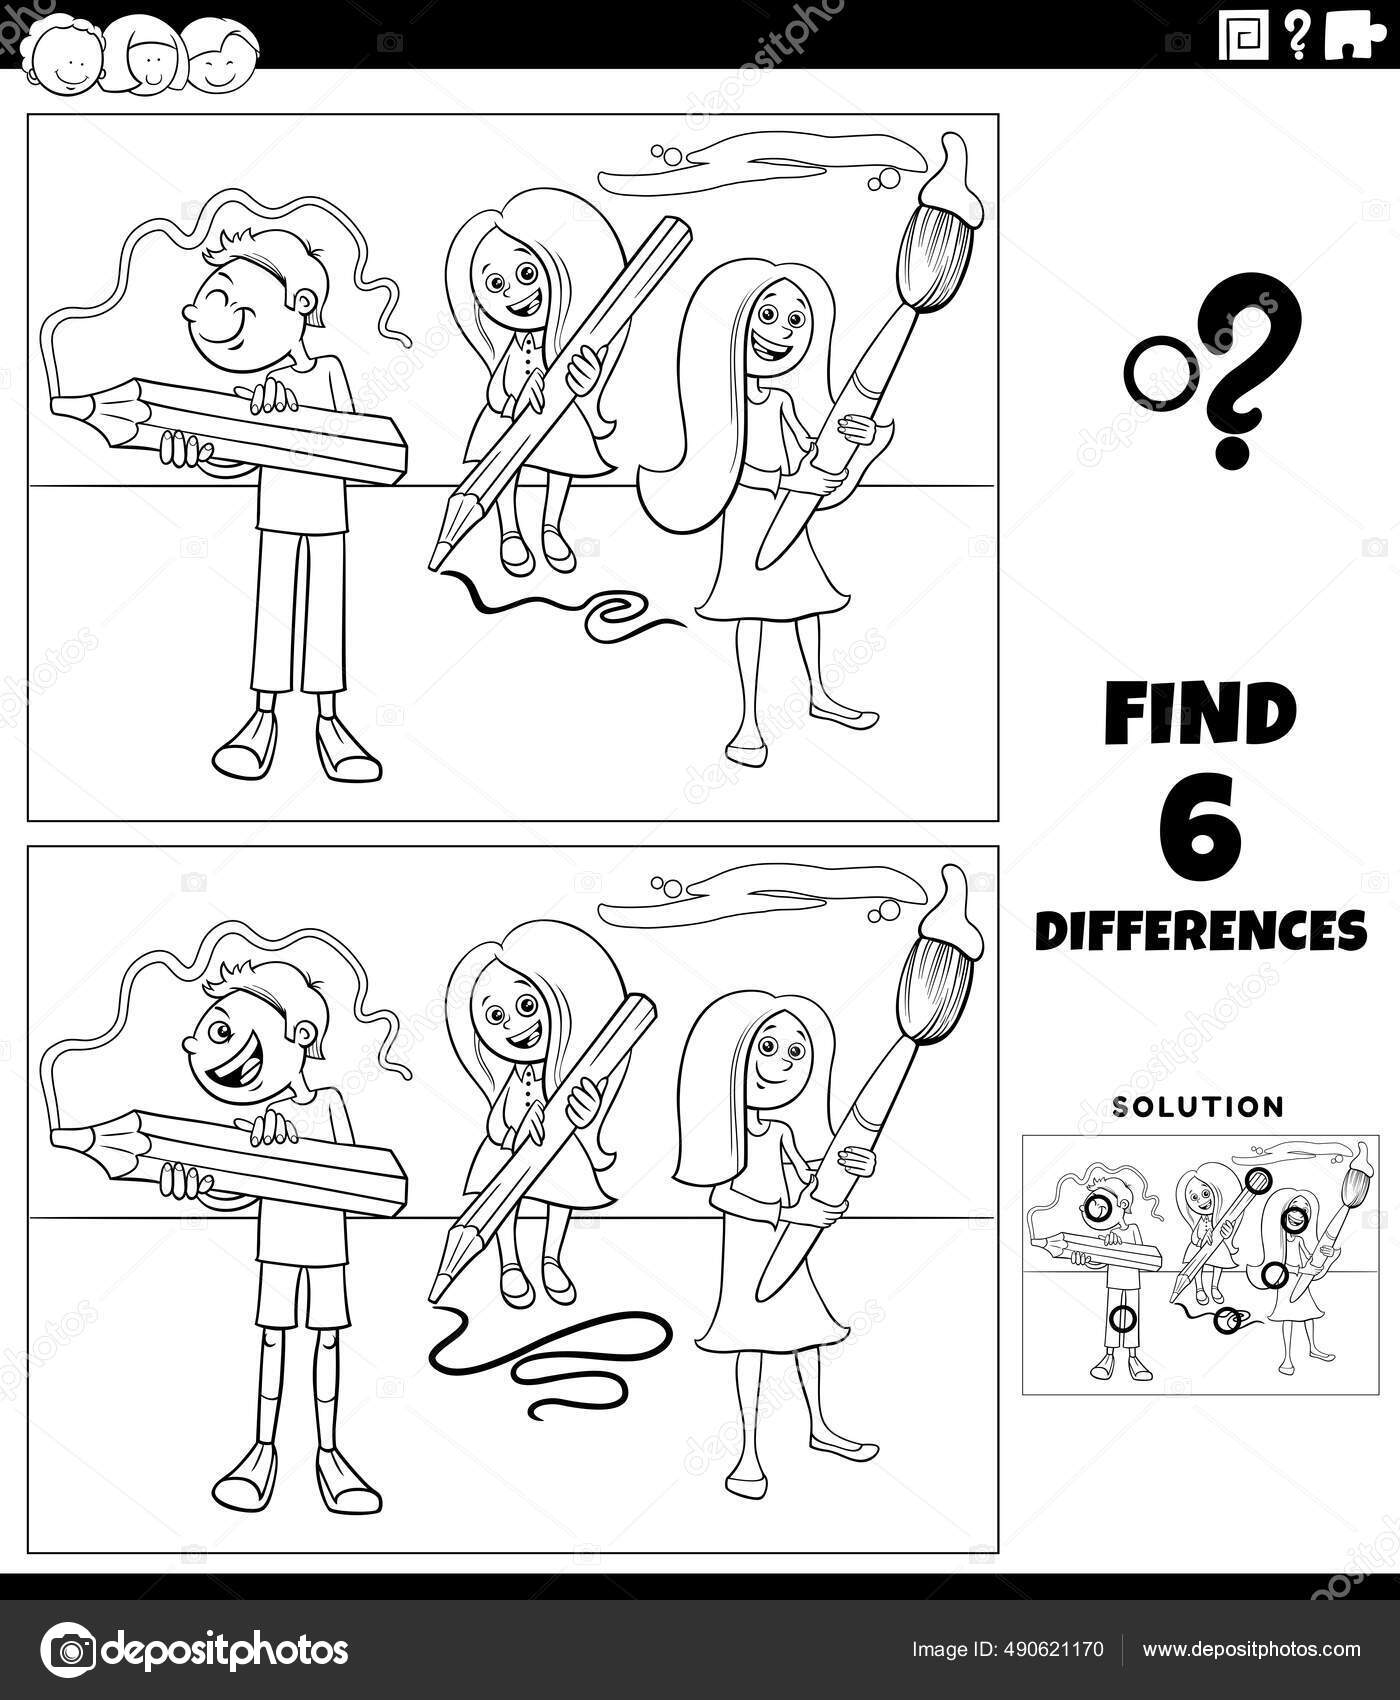 Desenho animado de encontrar as diferenças entre imagens - jogo